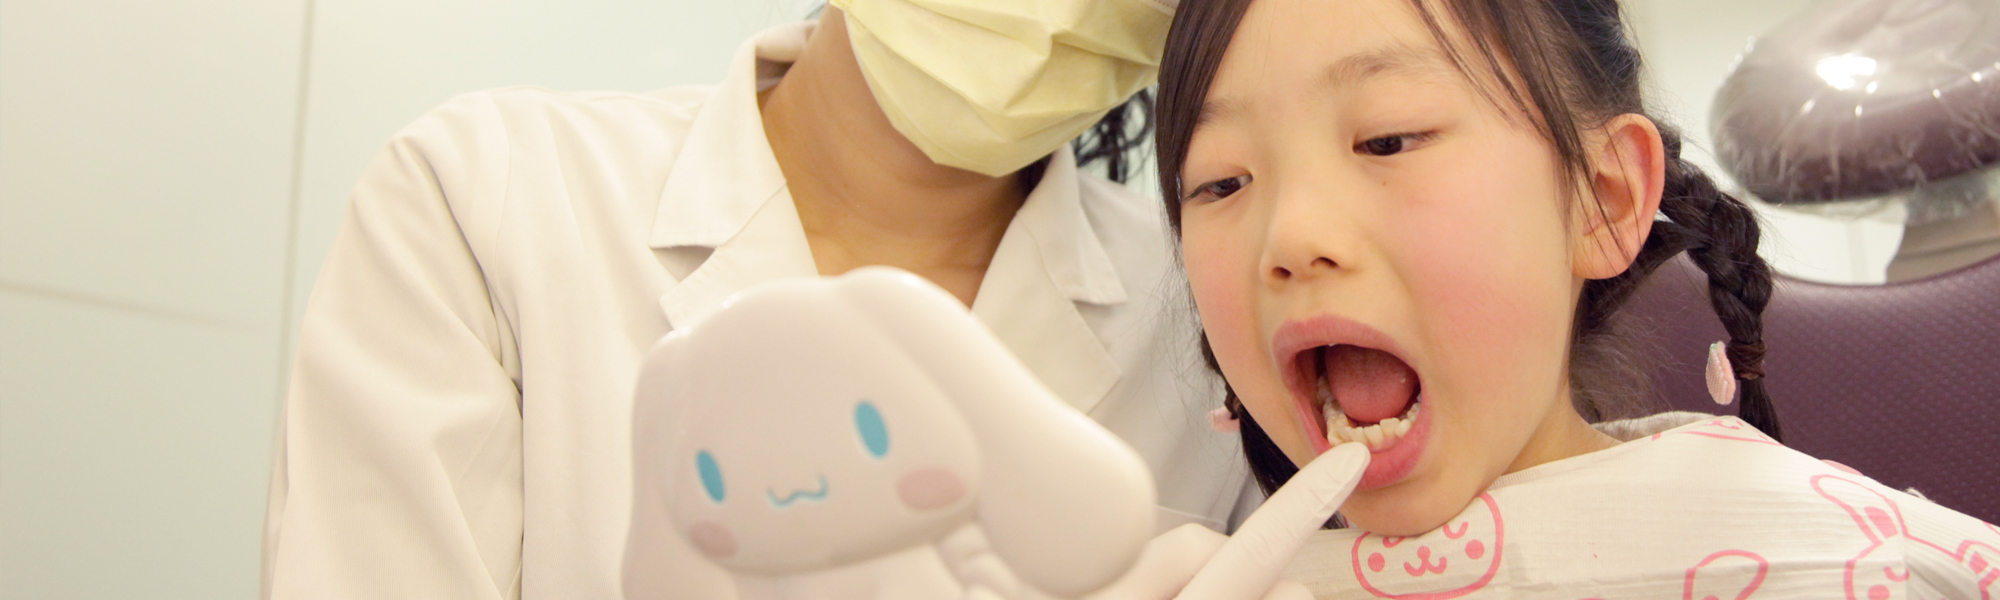 ふじさき歯科の小児歯科への取り組み